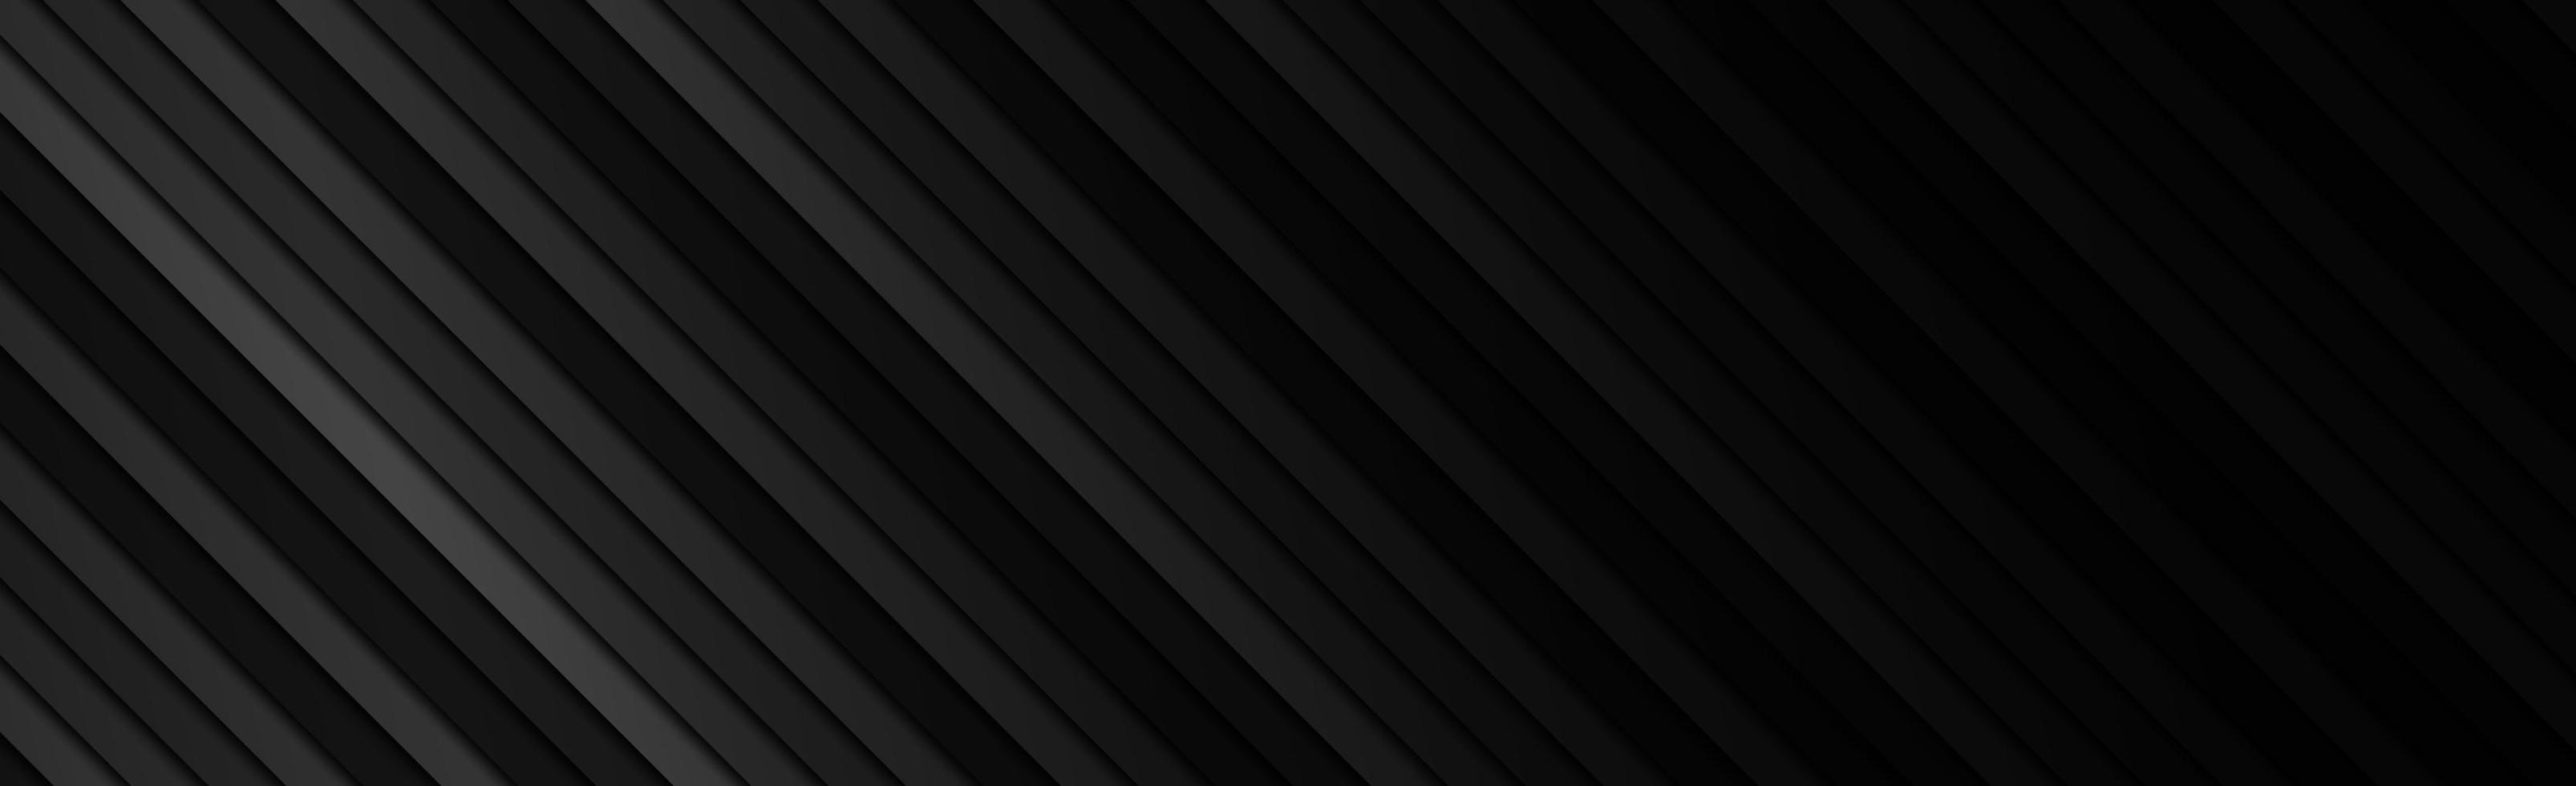 panoramische zwarte en grijze diagonale lijnen, webachtergrond - vector